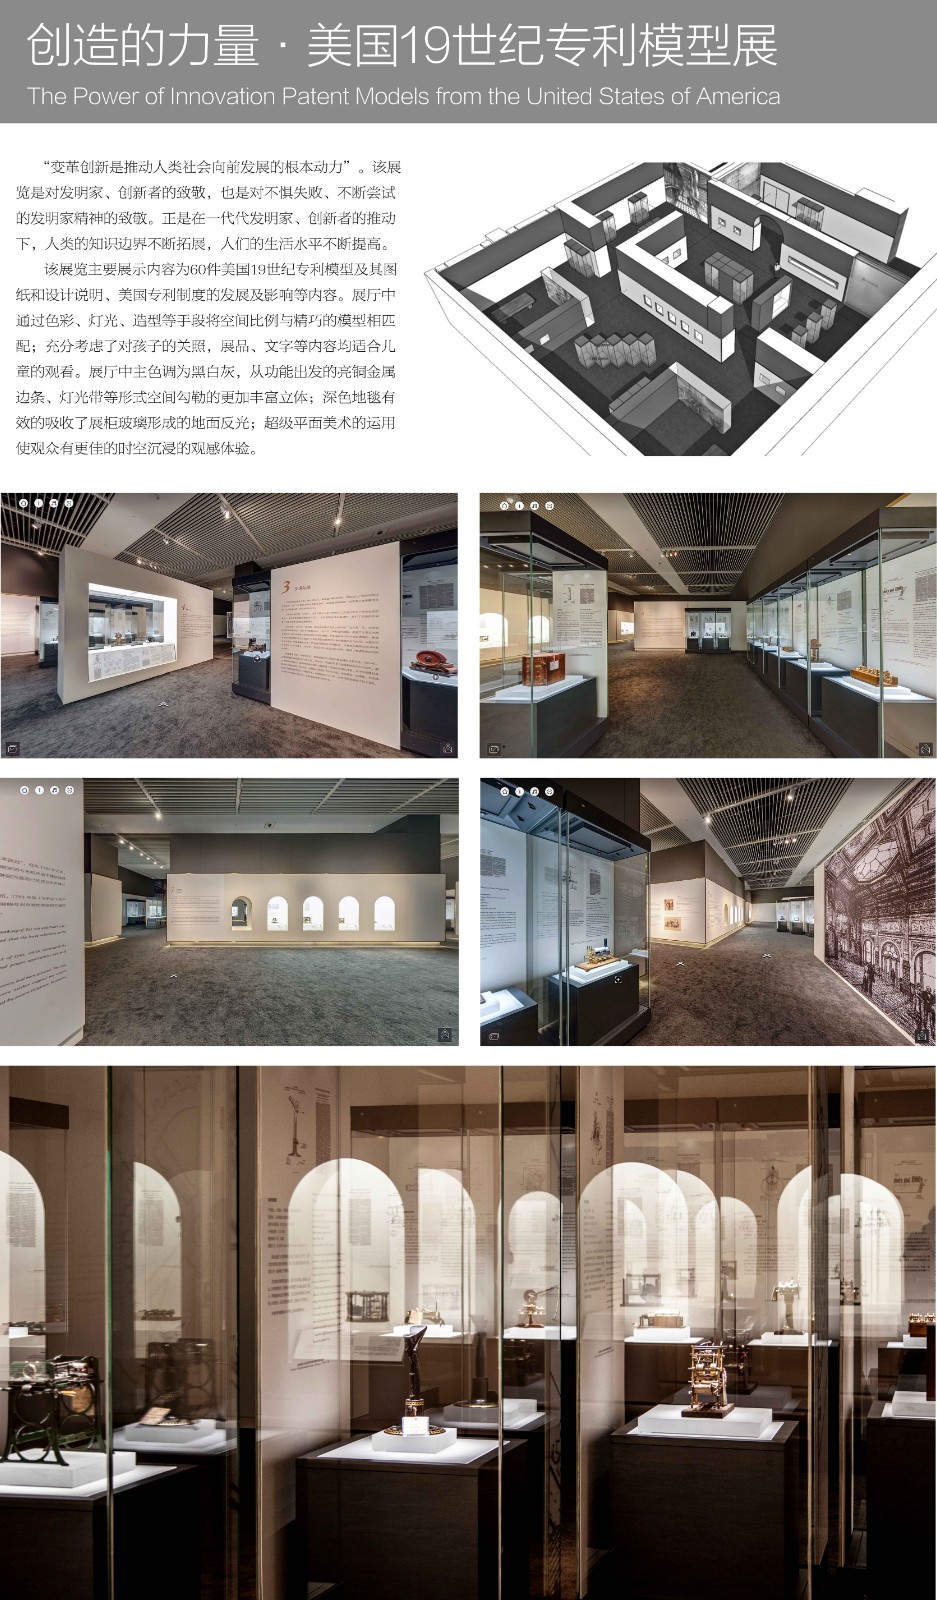 39、赵囡囡（建筑学院教师）《创造的力量·美国19世纪专利模型展》 KT板 200X120cm 2018年.jpg